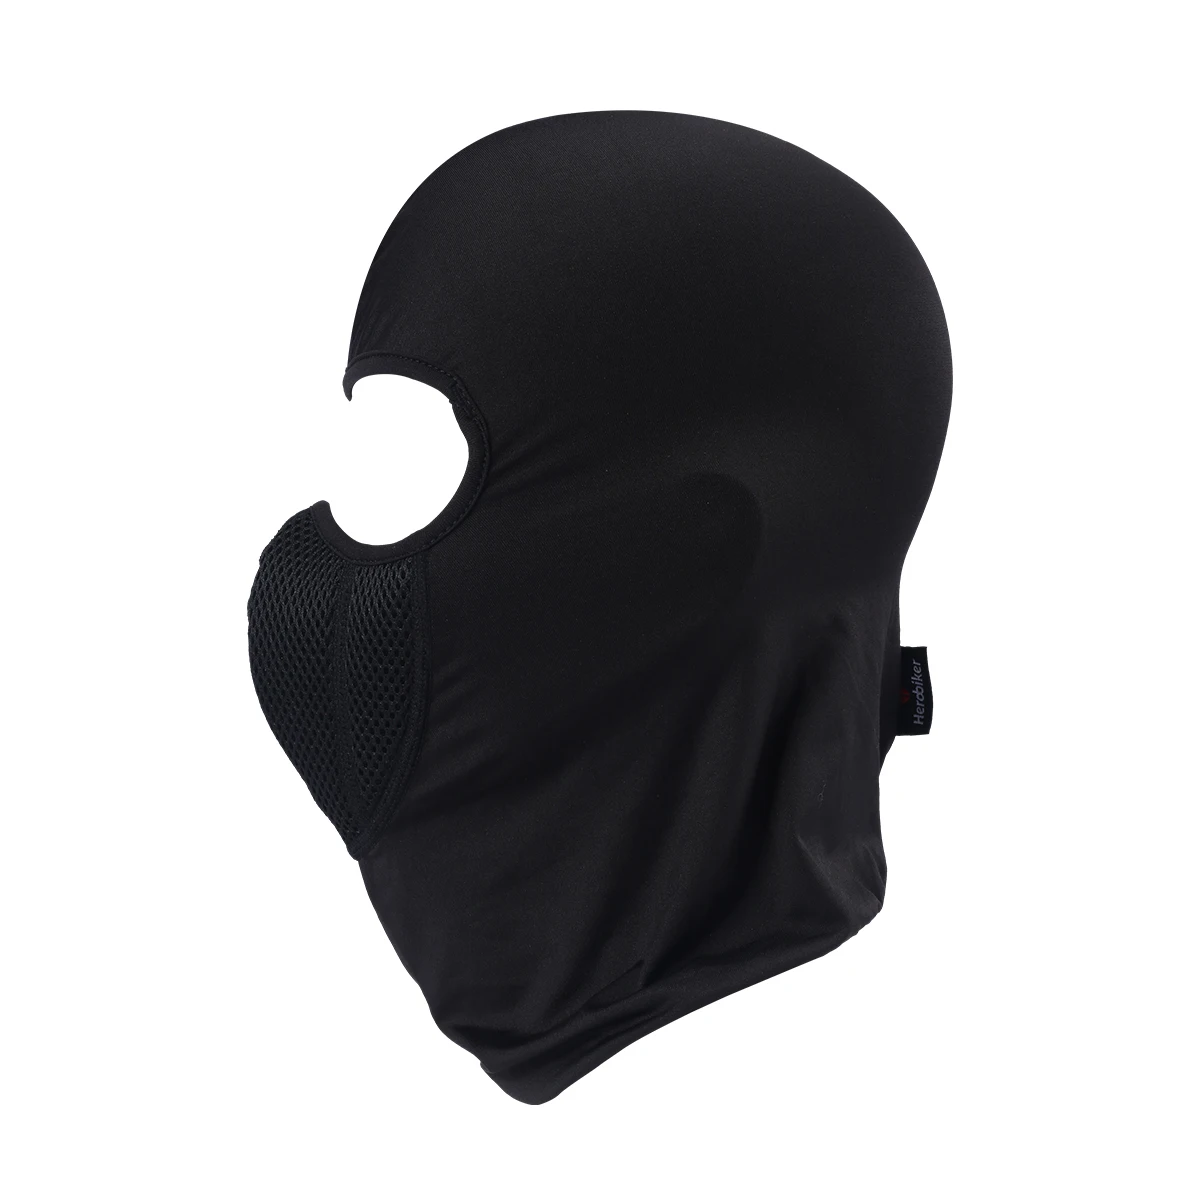 HEROBIKER мотоциклетная маска Балаклава мото маска тактическая маска для лица страйкбол Пейнтбол шлем Шапка Лыжная мото тренировочная маска